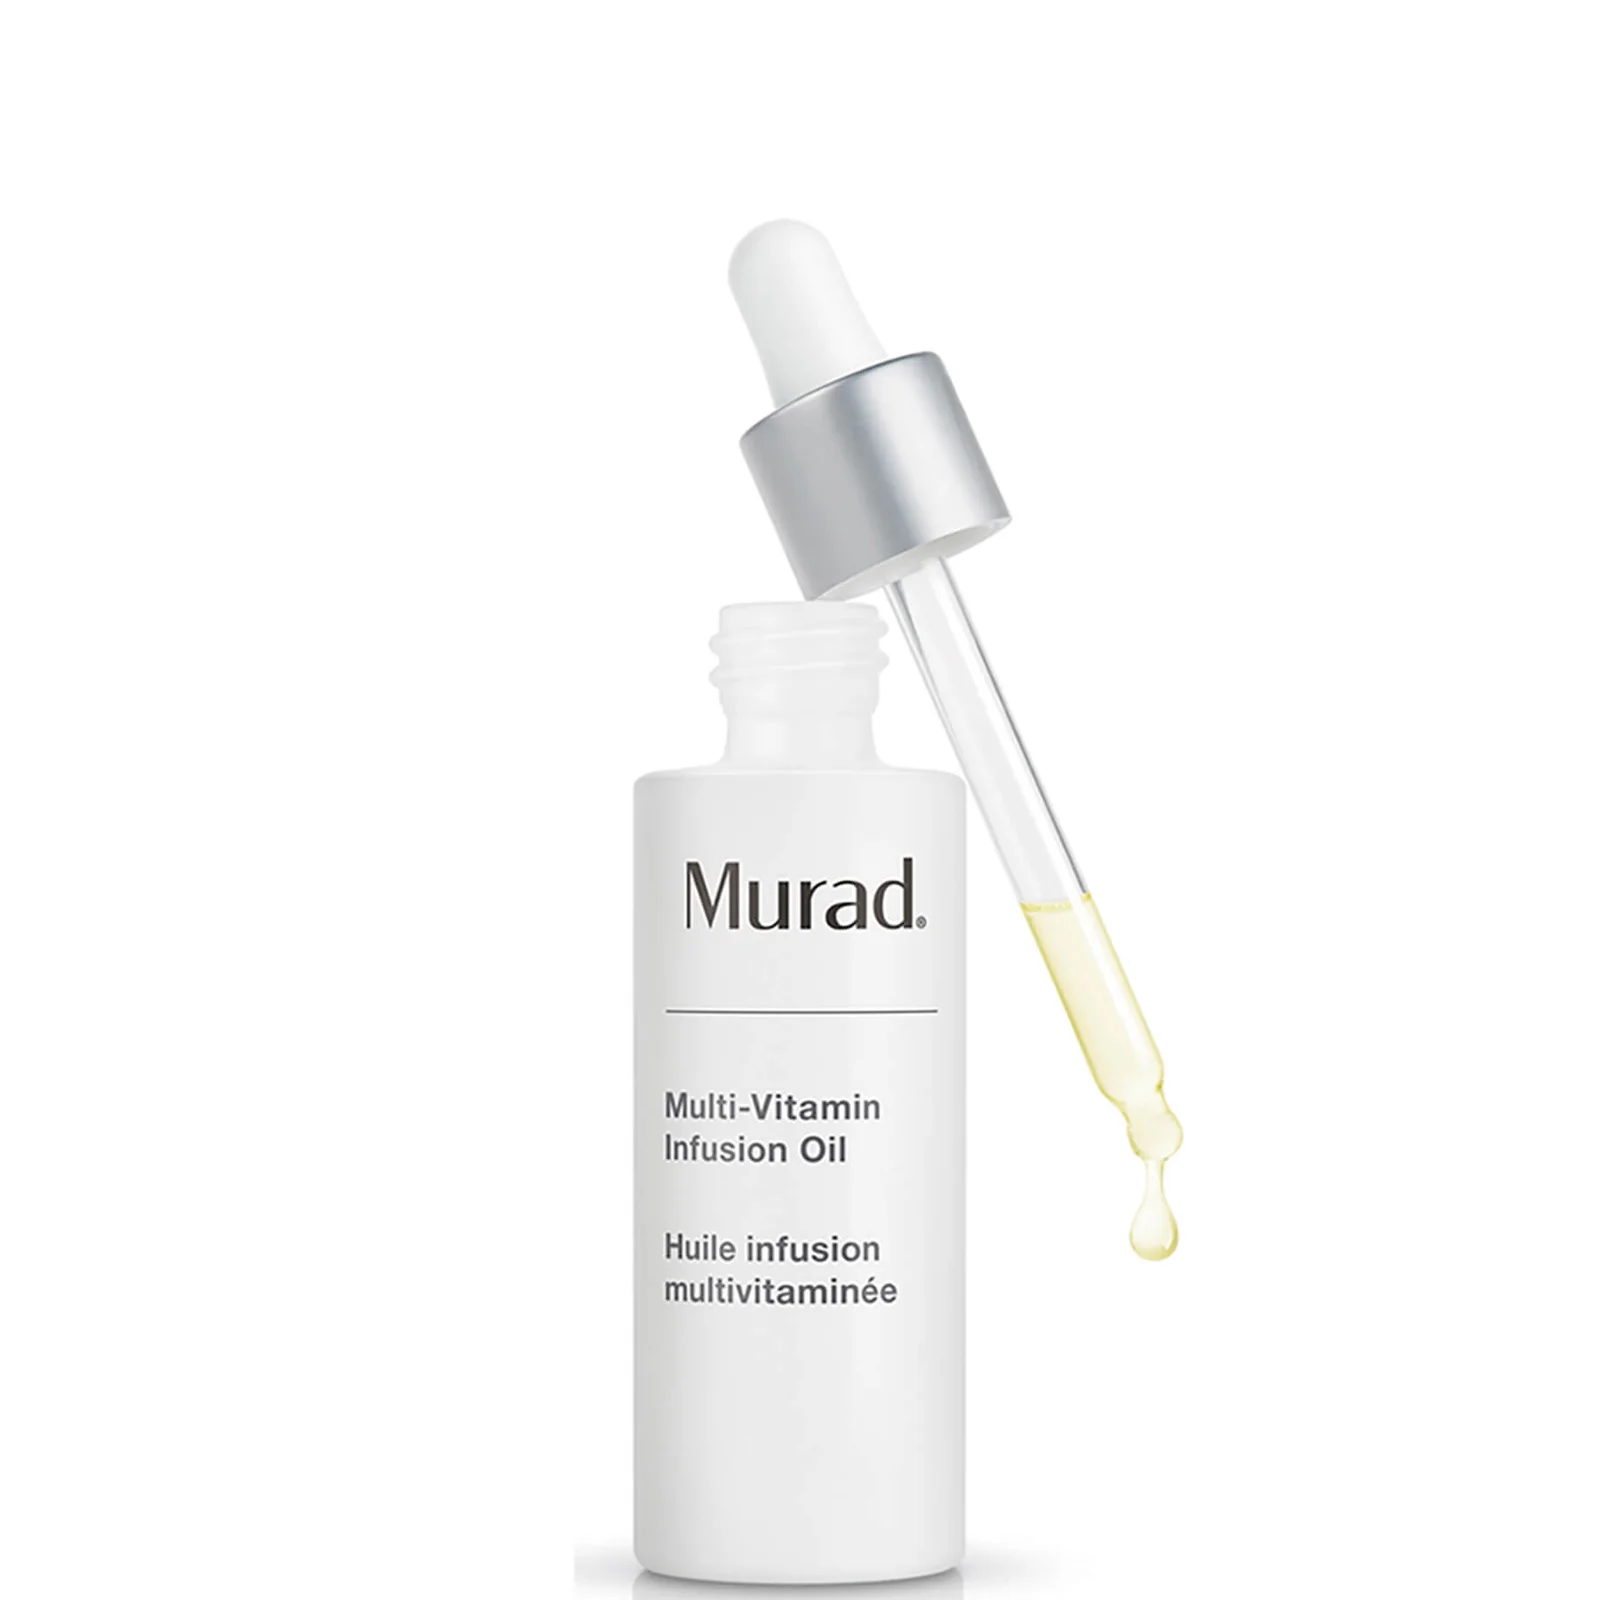 Murad Multi-Vitamin Infusion Oil 30ml Image 1